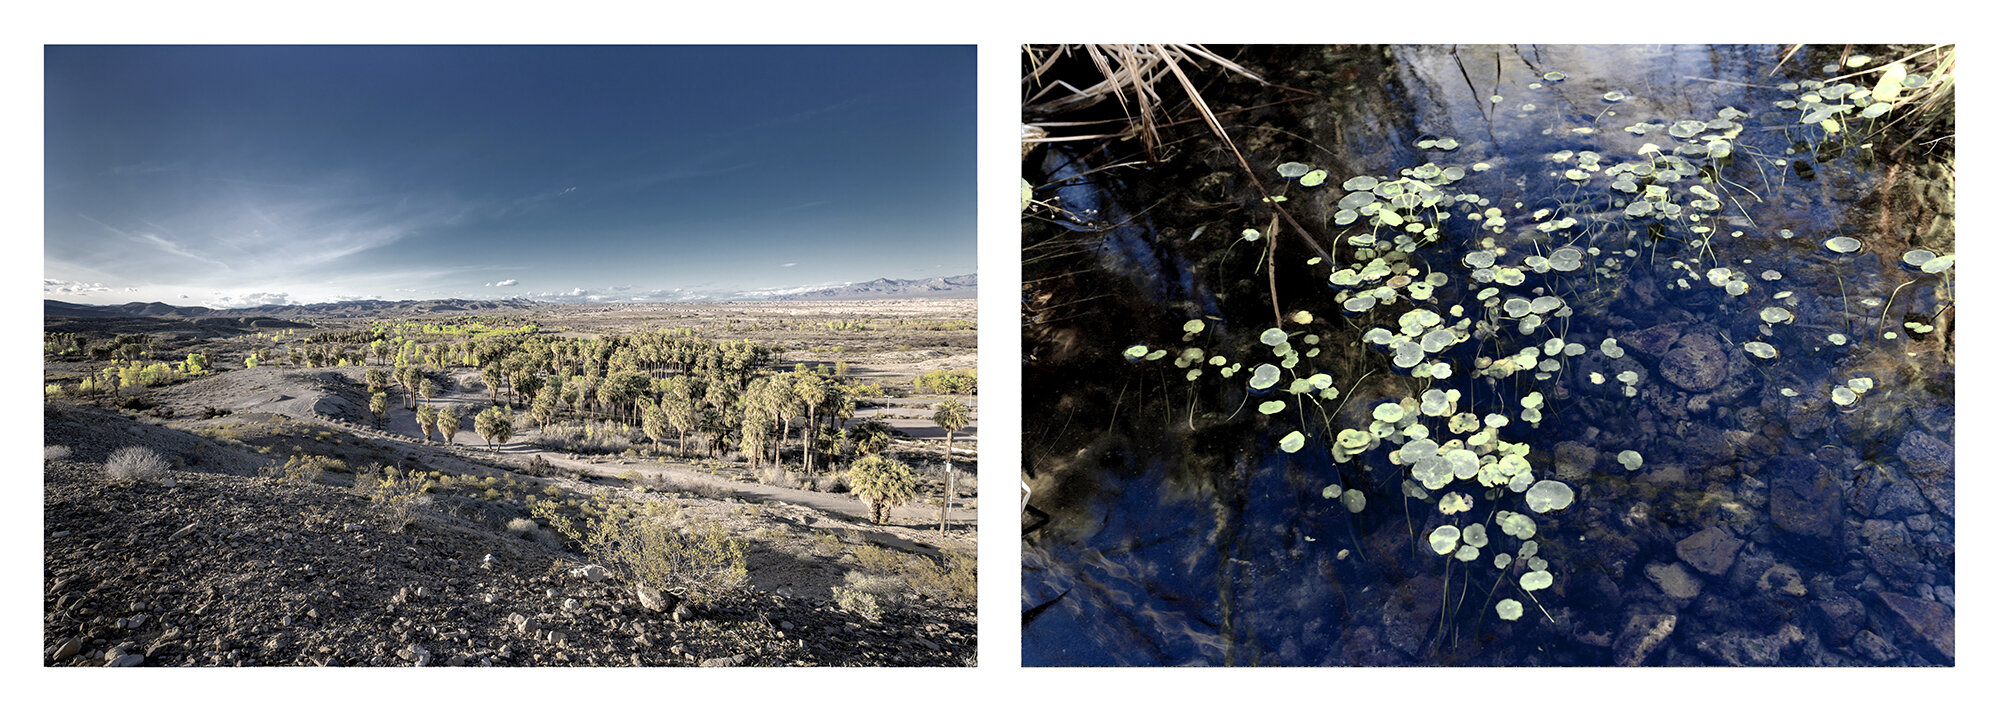 Warm Springs, Moapa, Mojave Desert, NV